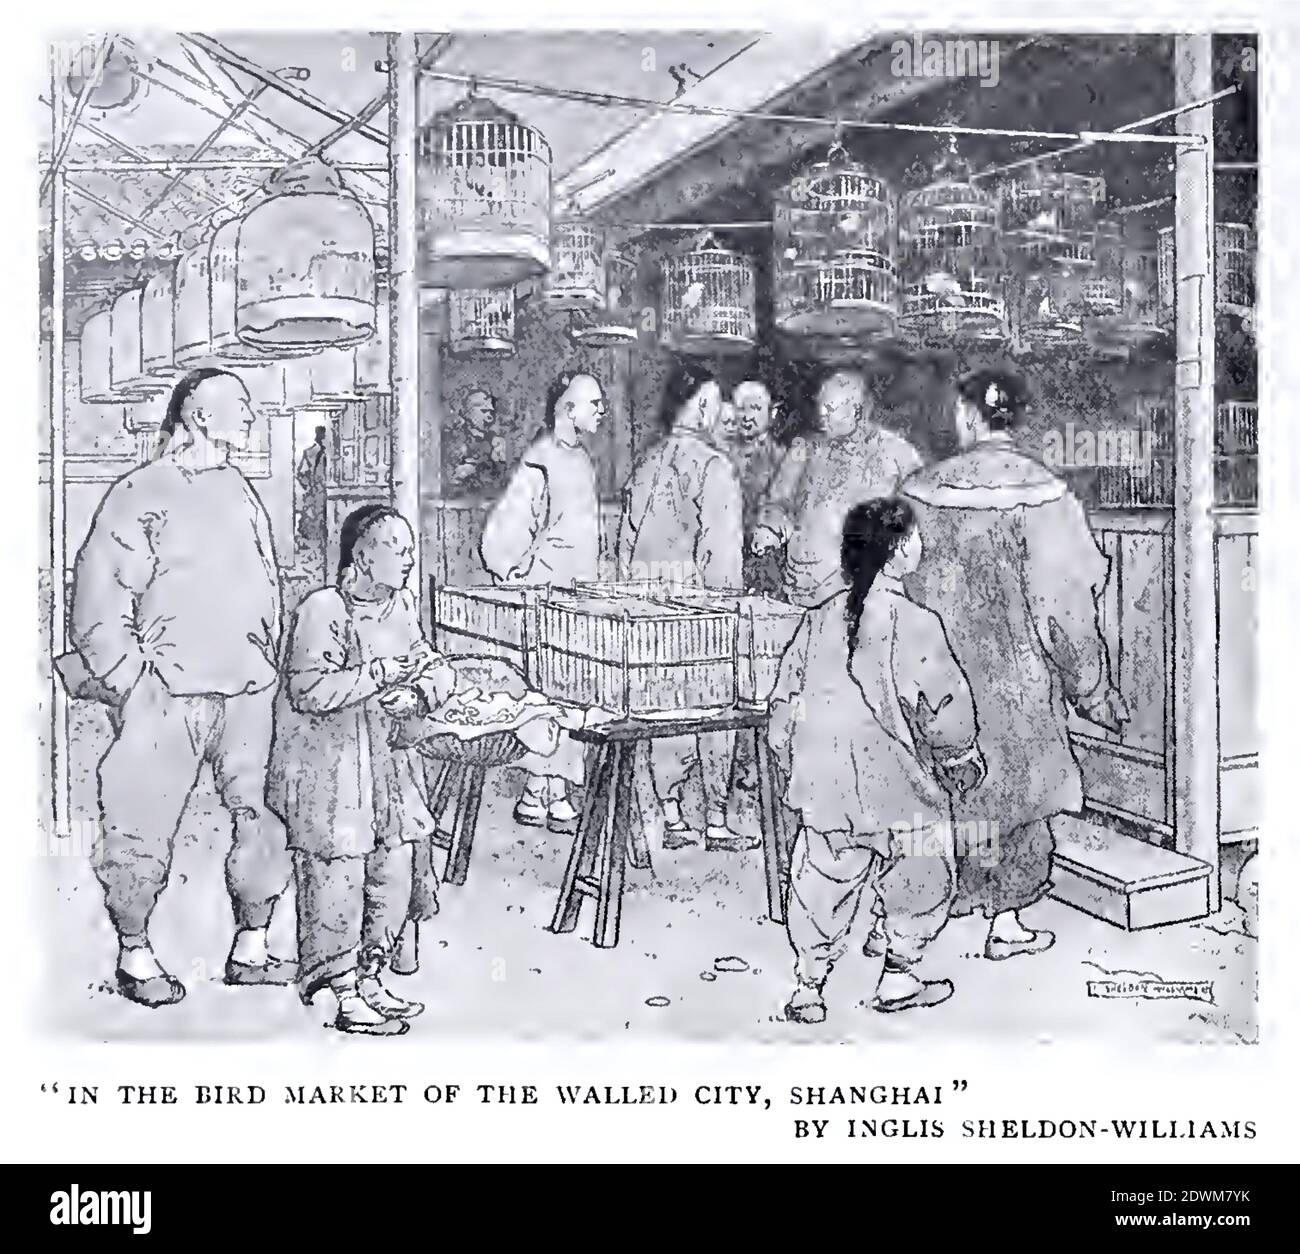 Illustration ancienne d'époque appelée dans le marché aux oiseaux de la ville fortifiée de Shanghai par anglo-canadiana Inglis Sheldon Williams. Banque D'Images